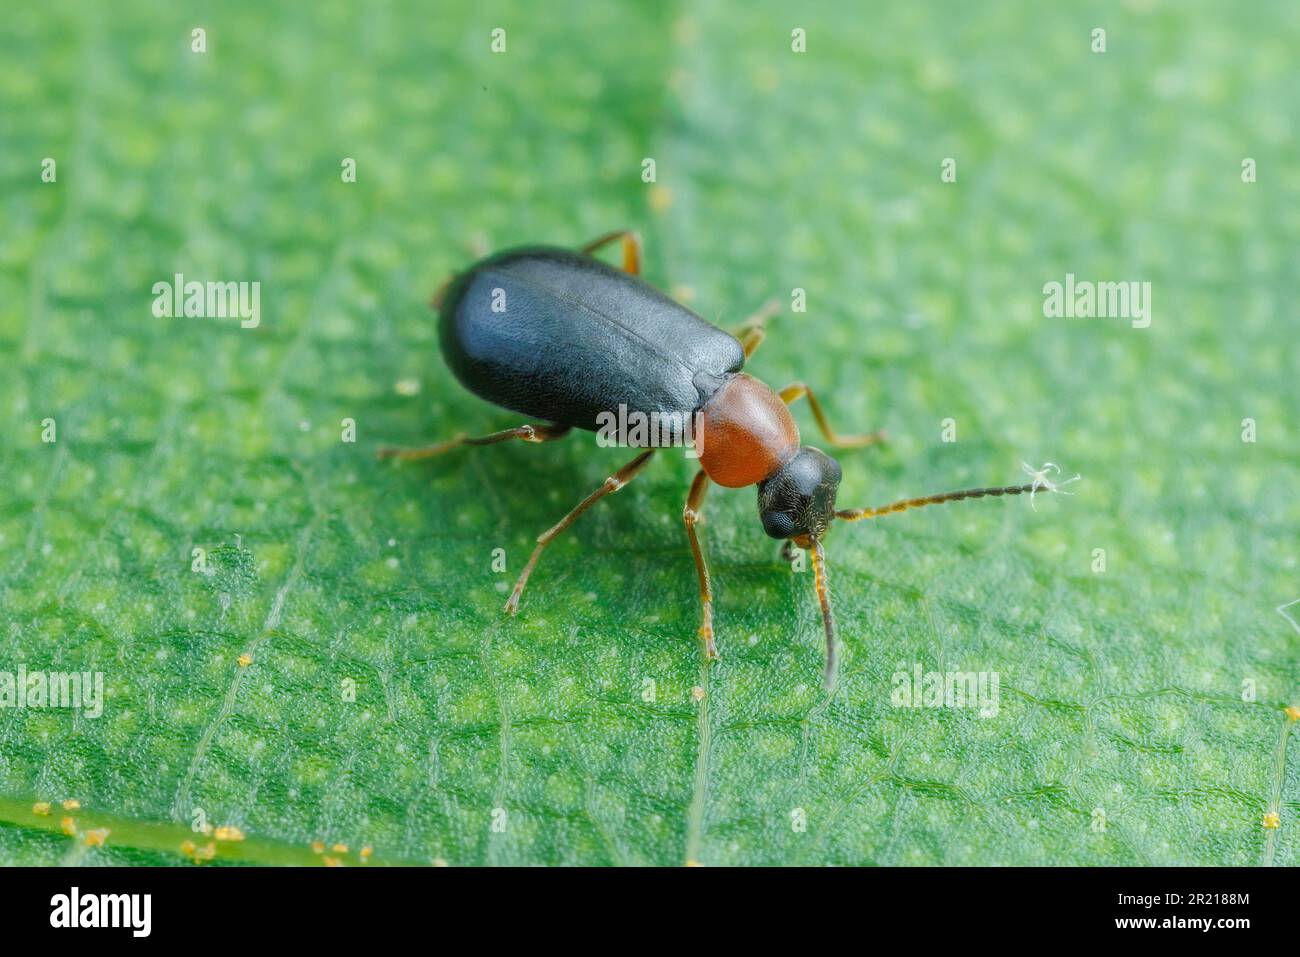 Malachite Beetle (Hypebaeus sp.) Stock Photo